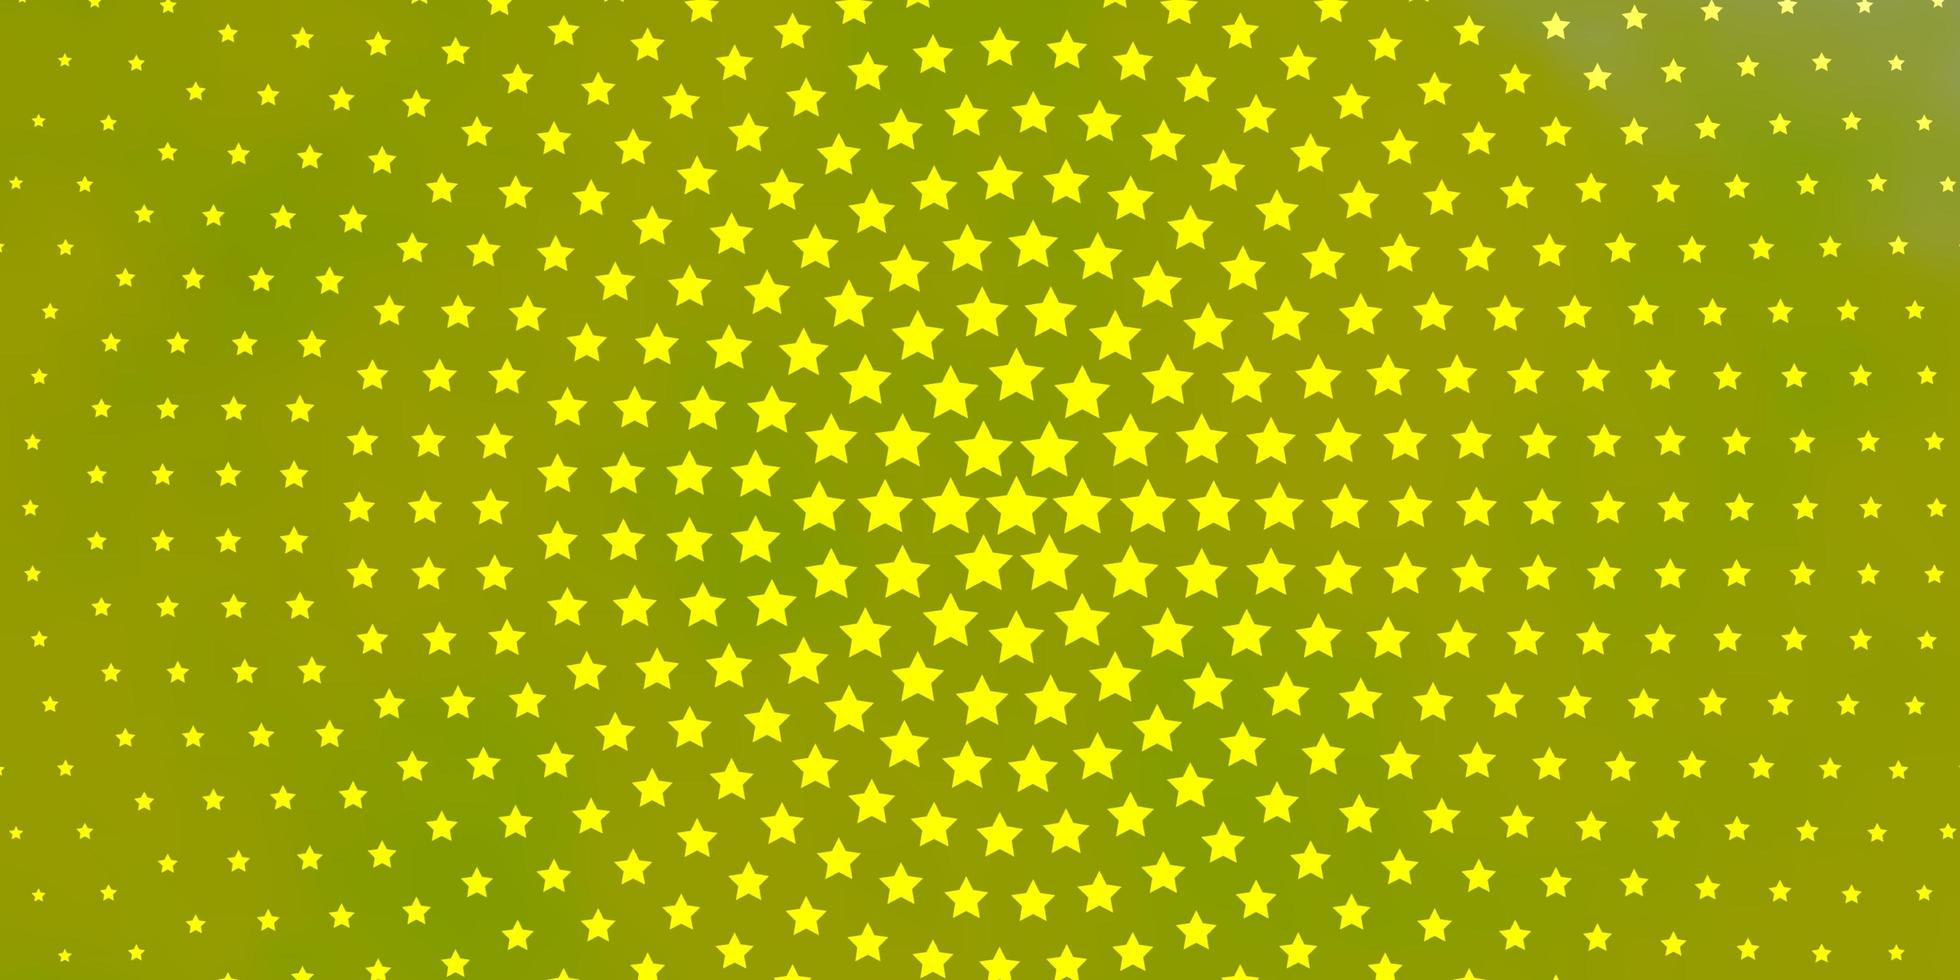 hellgrüne, gelbe Vektortextur mit schönen Sternen. leuchtende bunte Illustration mit kleinen und großen Sternen. Muster für Websites, Zielseiten. vektor